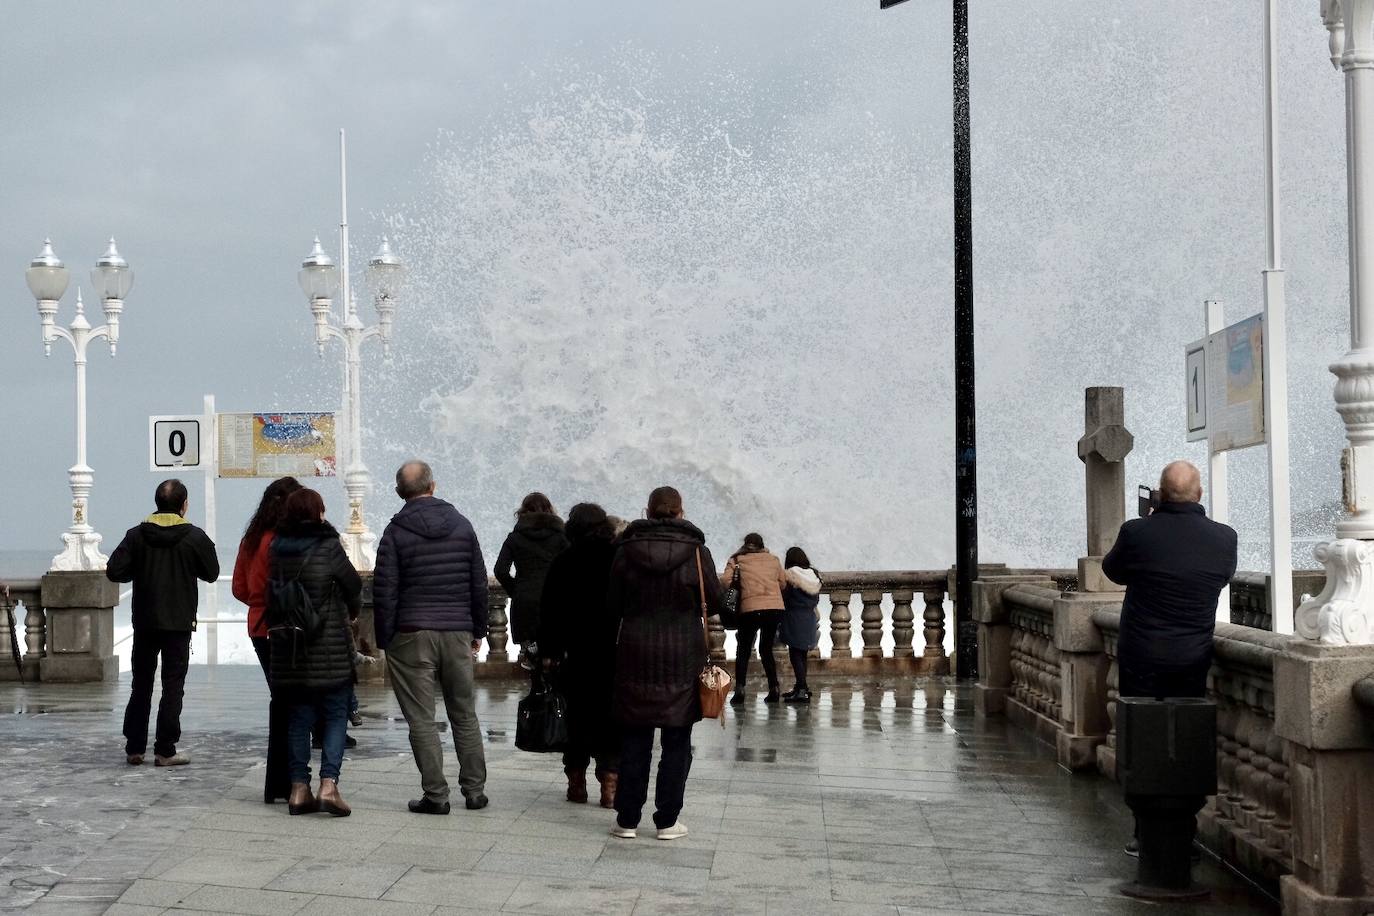 La costa asturiana está en alerta naranja por olas que pueden alcanzar hasta los siete metros. En muchos puntos del litoral, como en Gijón, el espectáculo del fuerte oleaje ha congregado a numerosos curiosos.